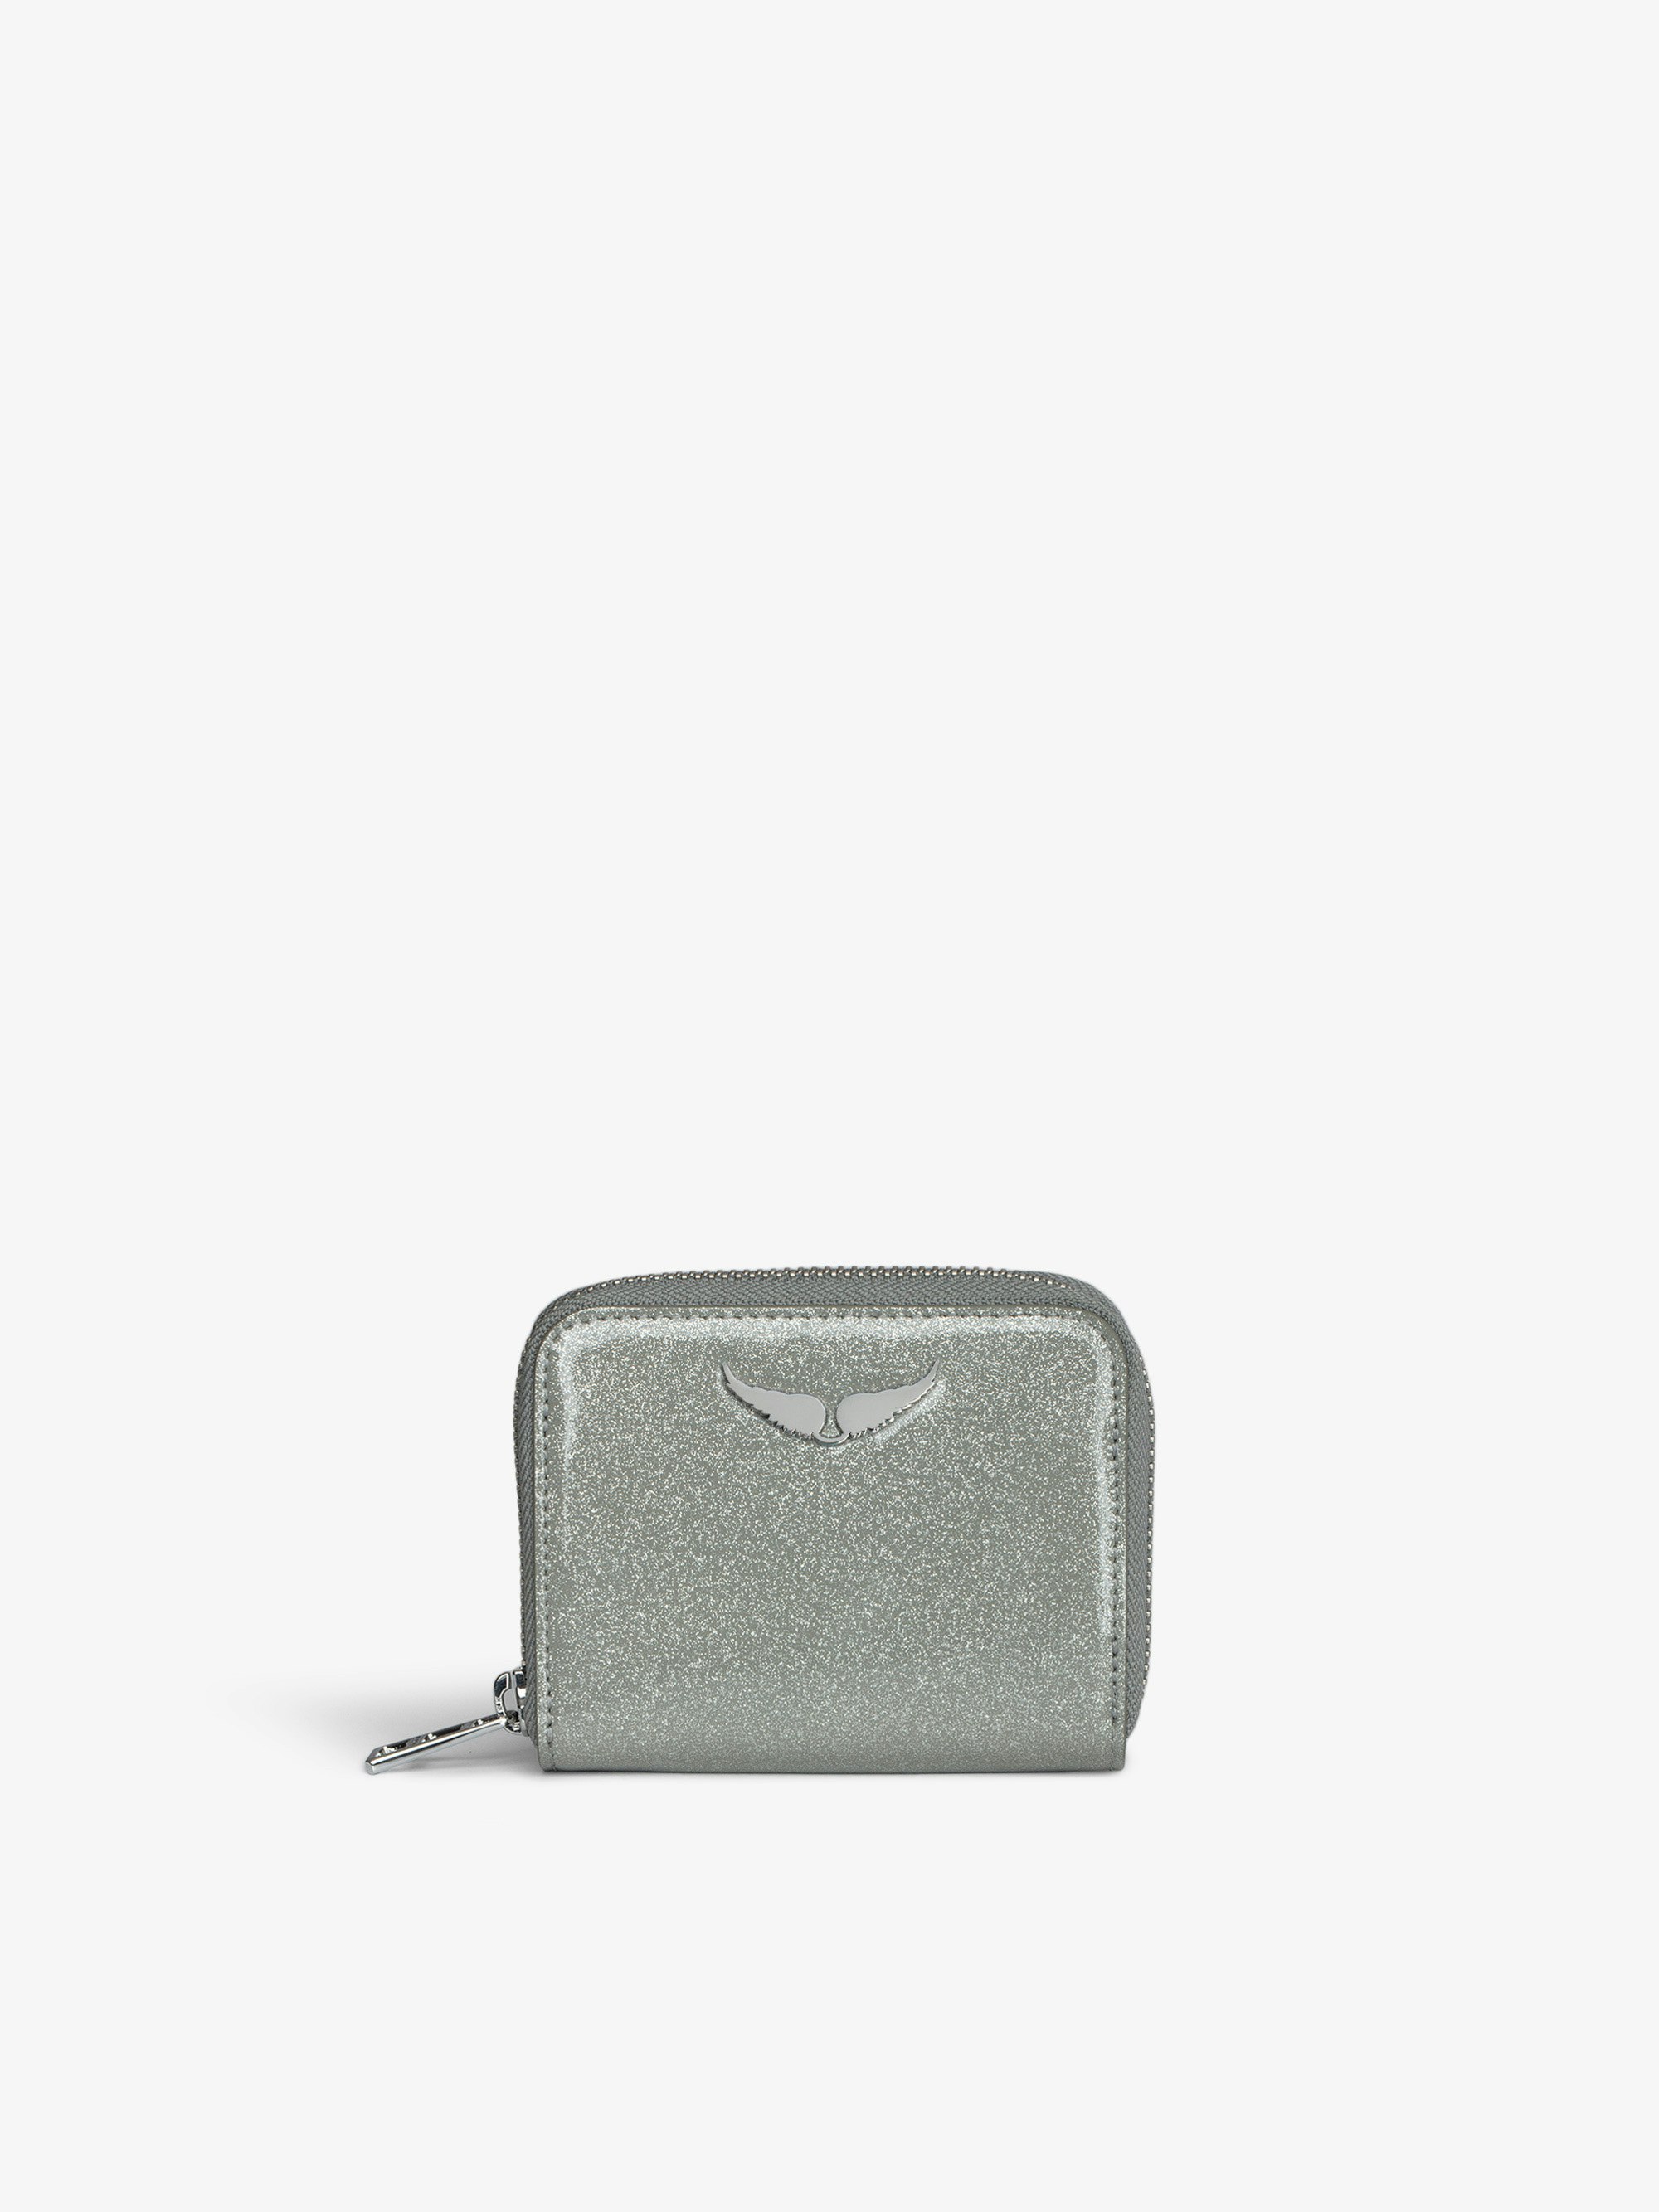 Portemonnaie Mini ZV Infinity Patent - Brieftasche aus silbernem Lackleder mit Pailletten mit einem Flügel-Charm.